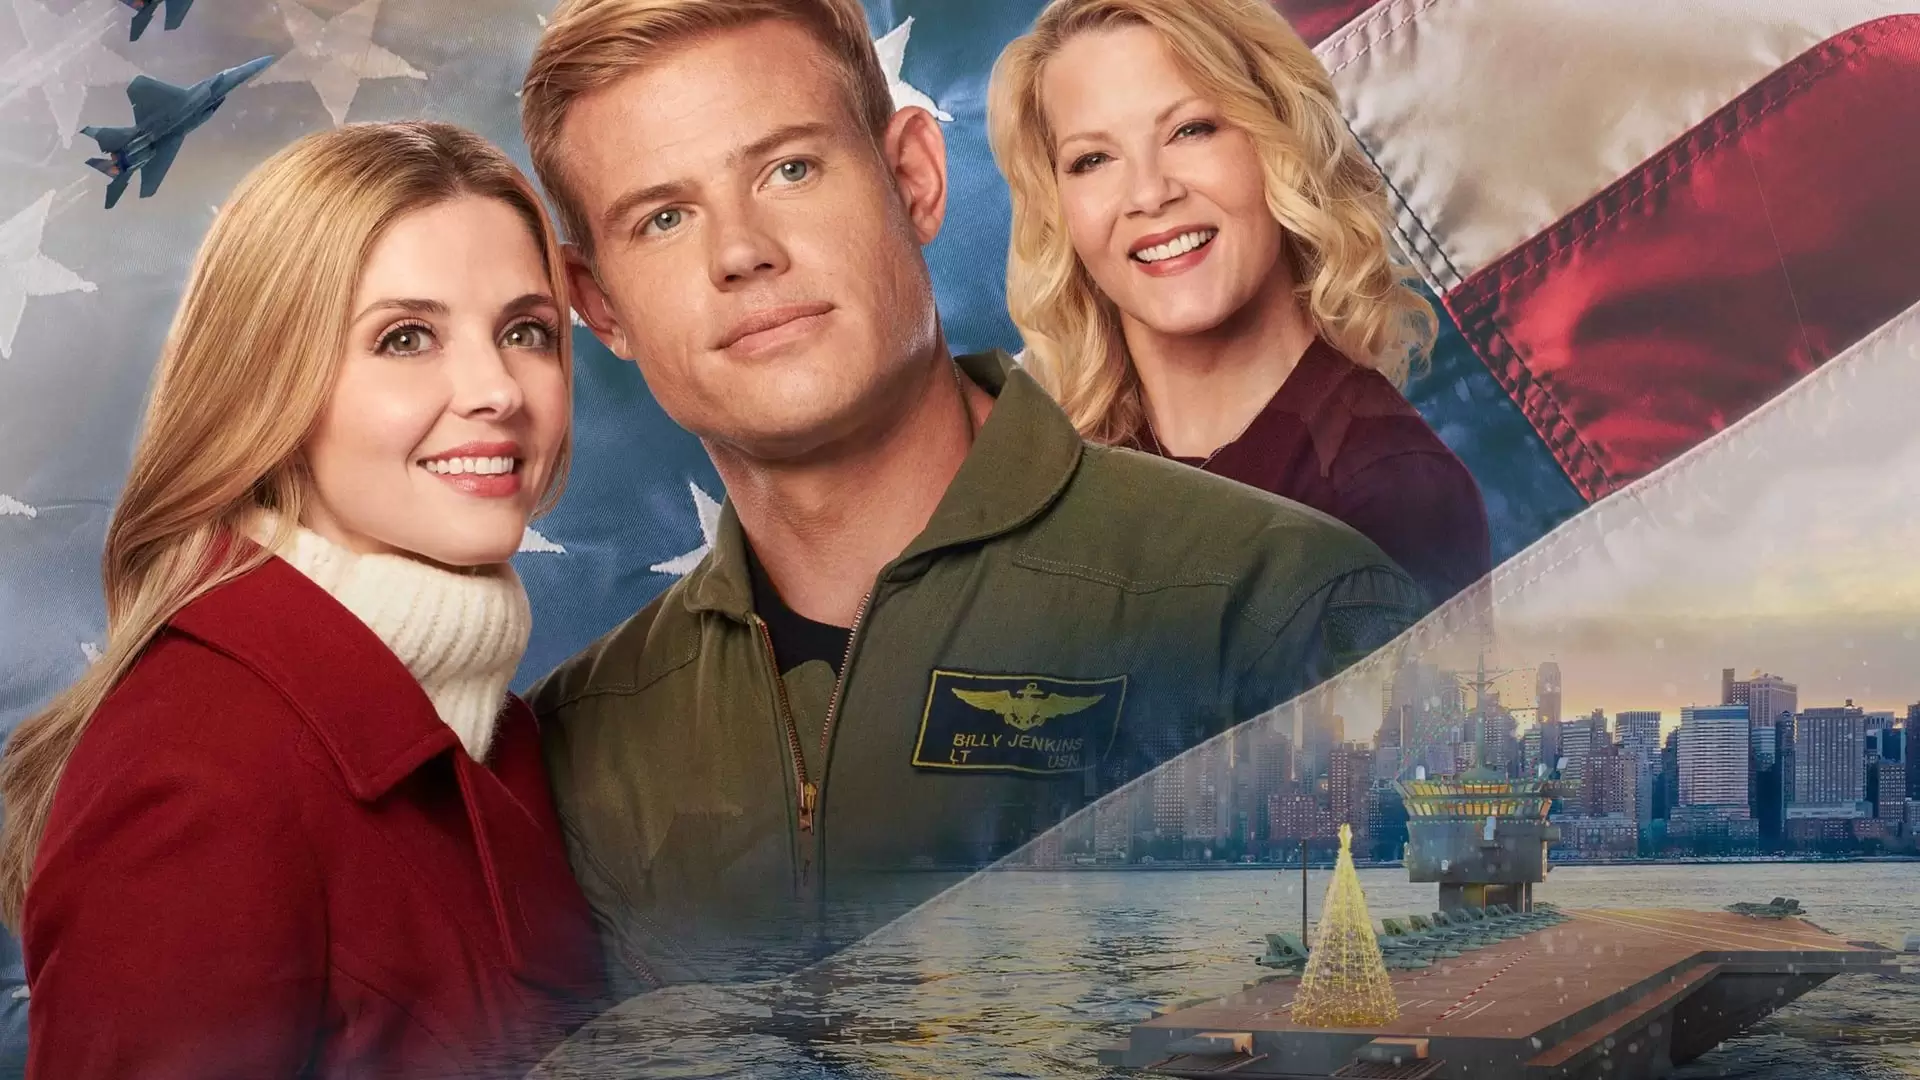 دانلود فیلم USS Christmas 2020